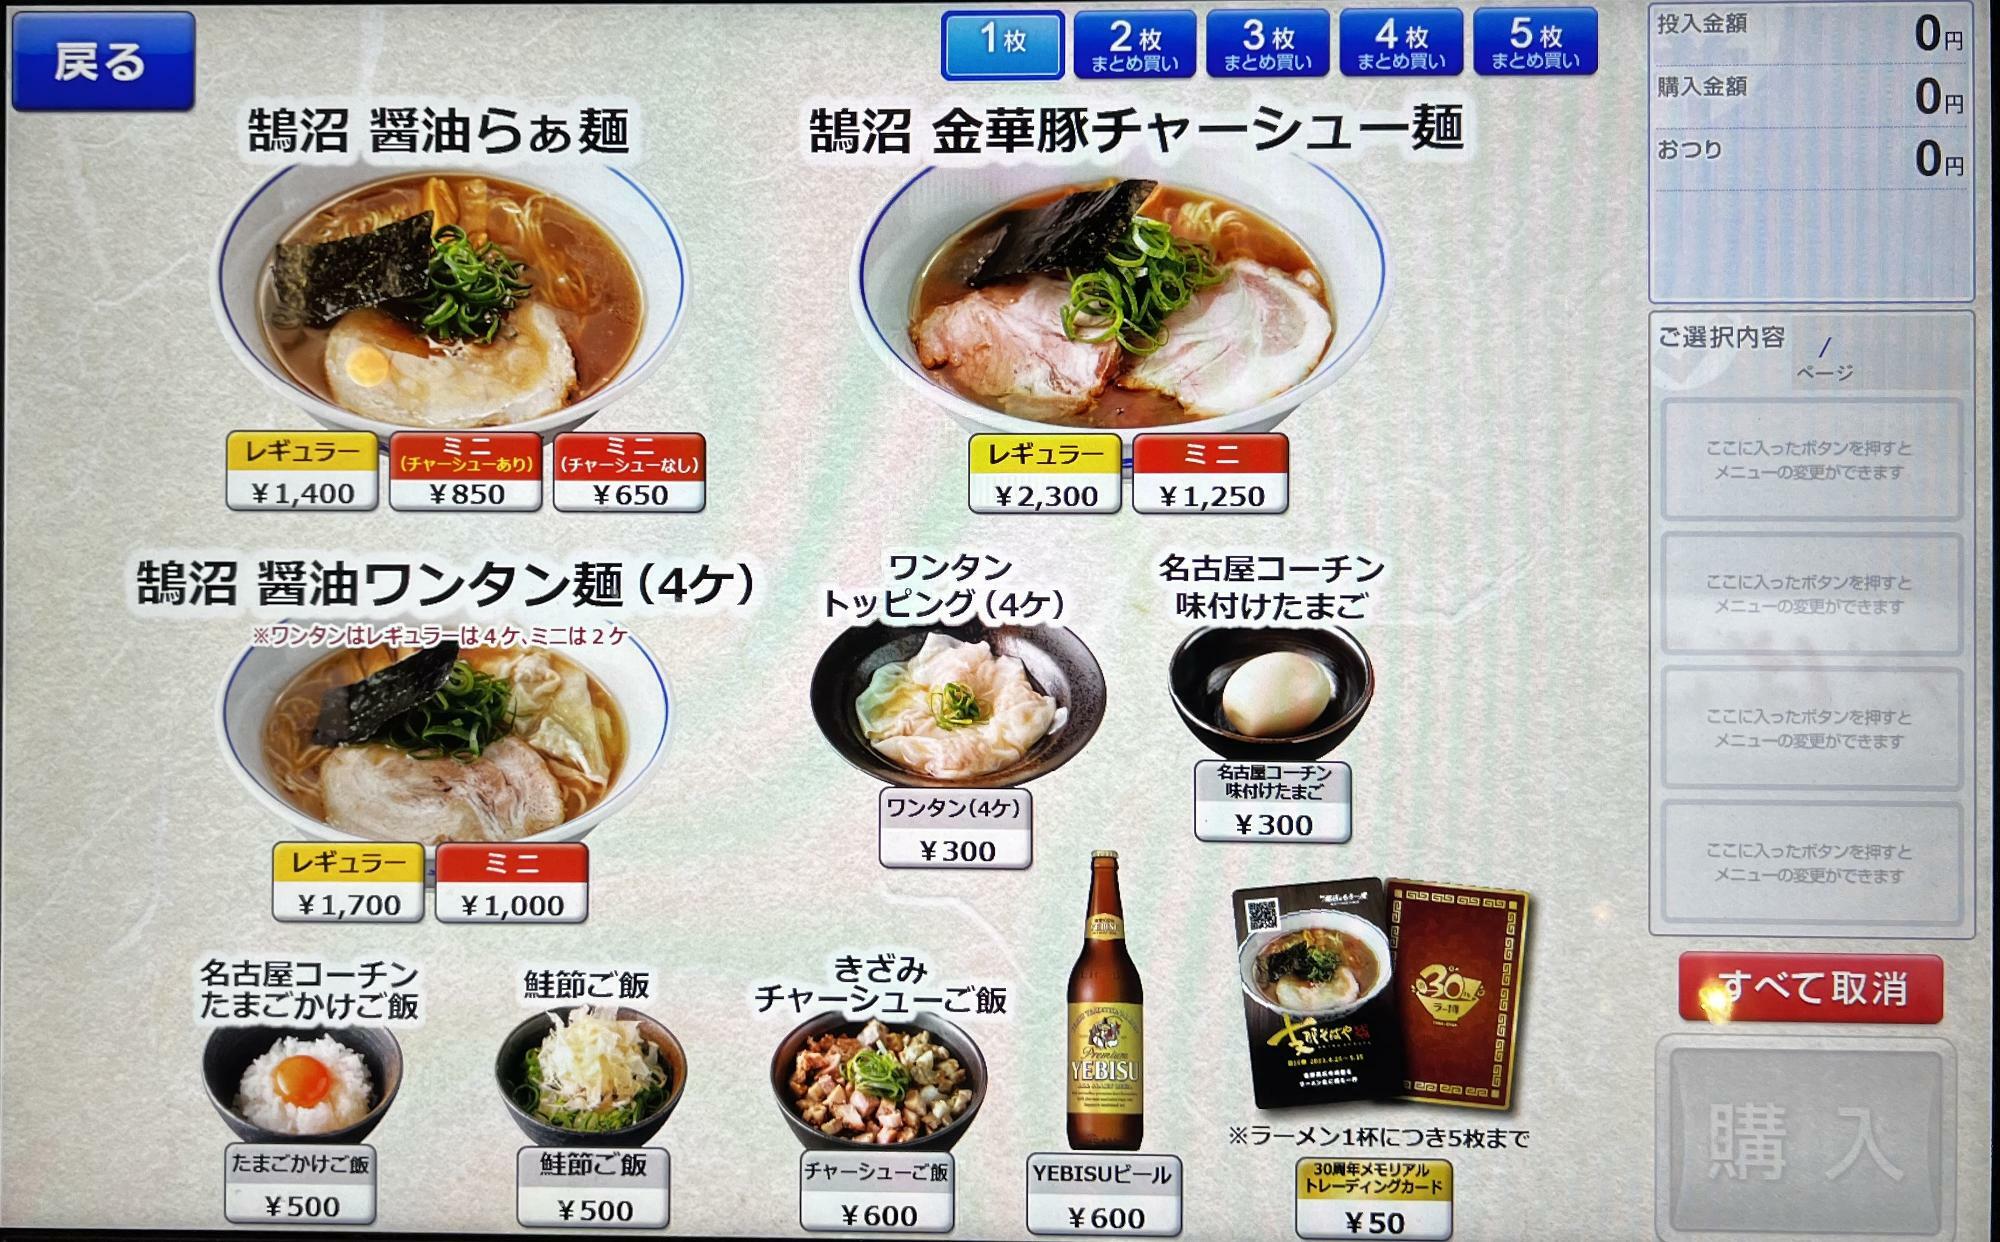 食材にこだわり抜いているので、金額設定は高めです。ただ、たまごかけご飯５００円は流石に高いかな。